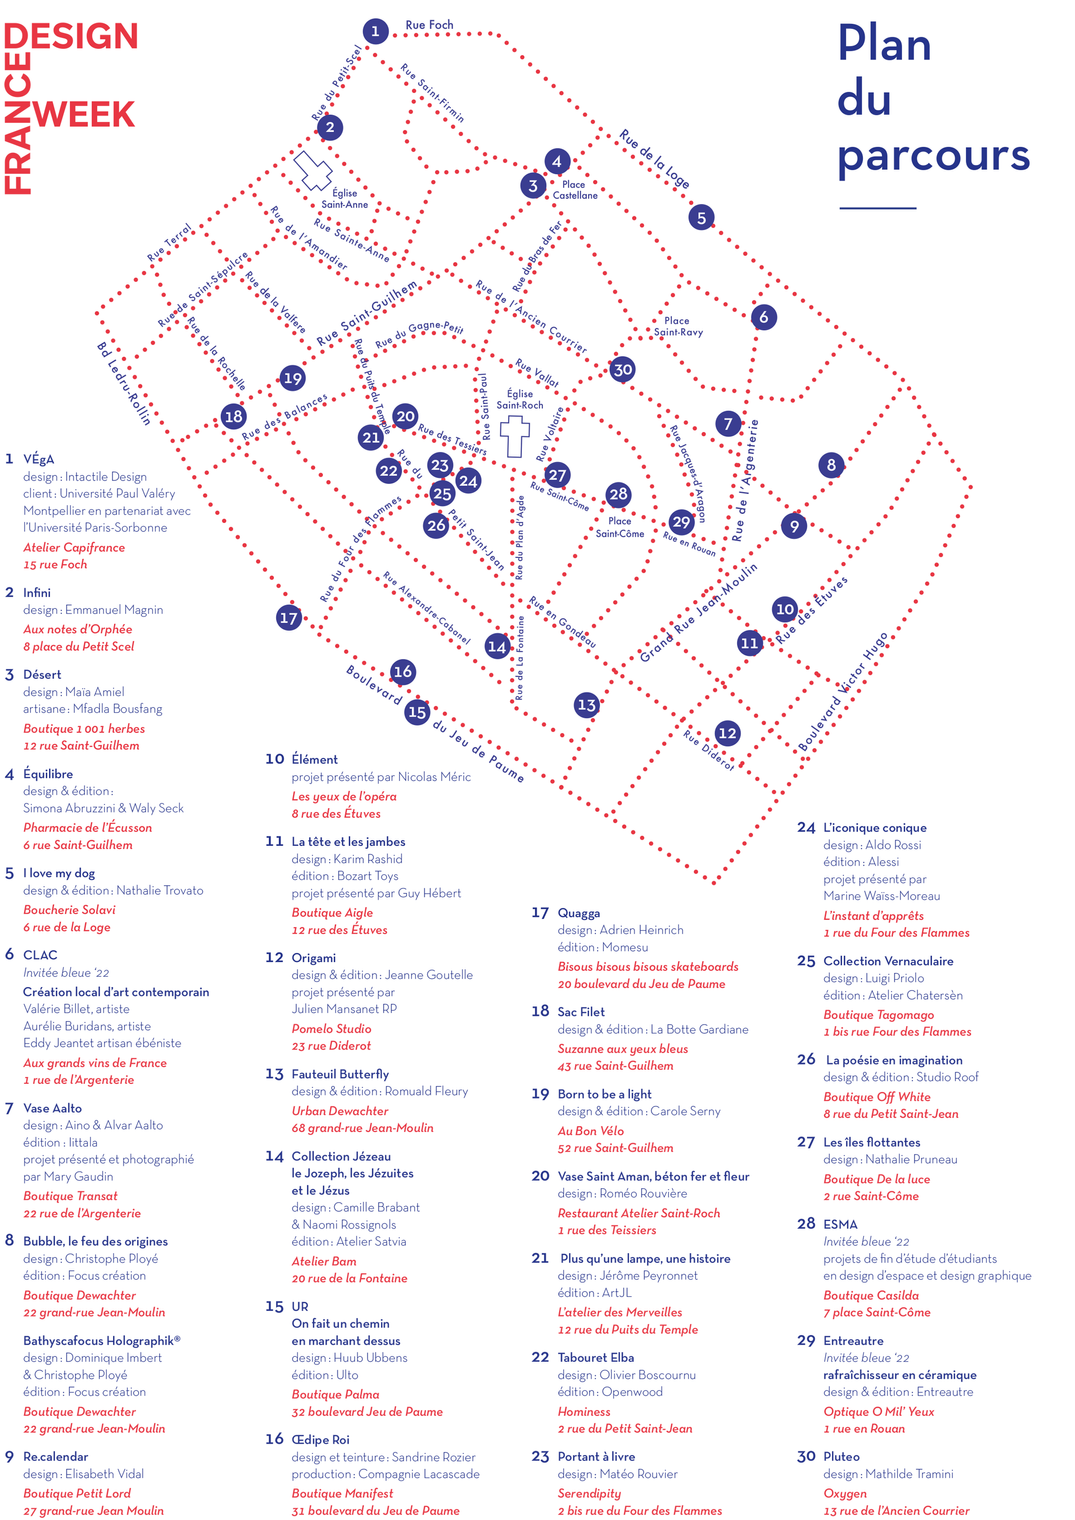 Plan du parcours de l'exposition des vitrines bleues